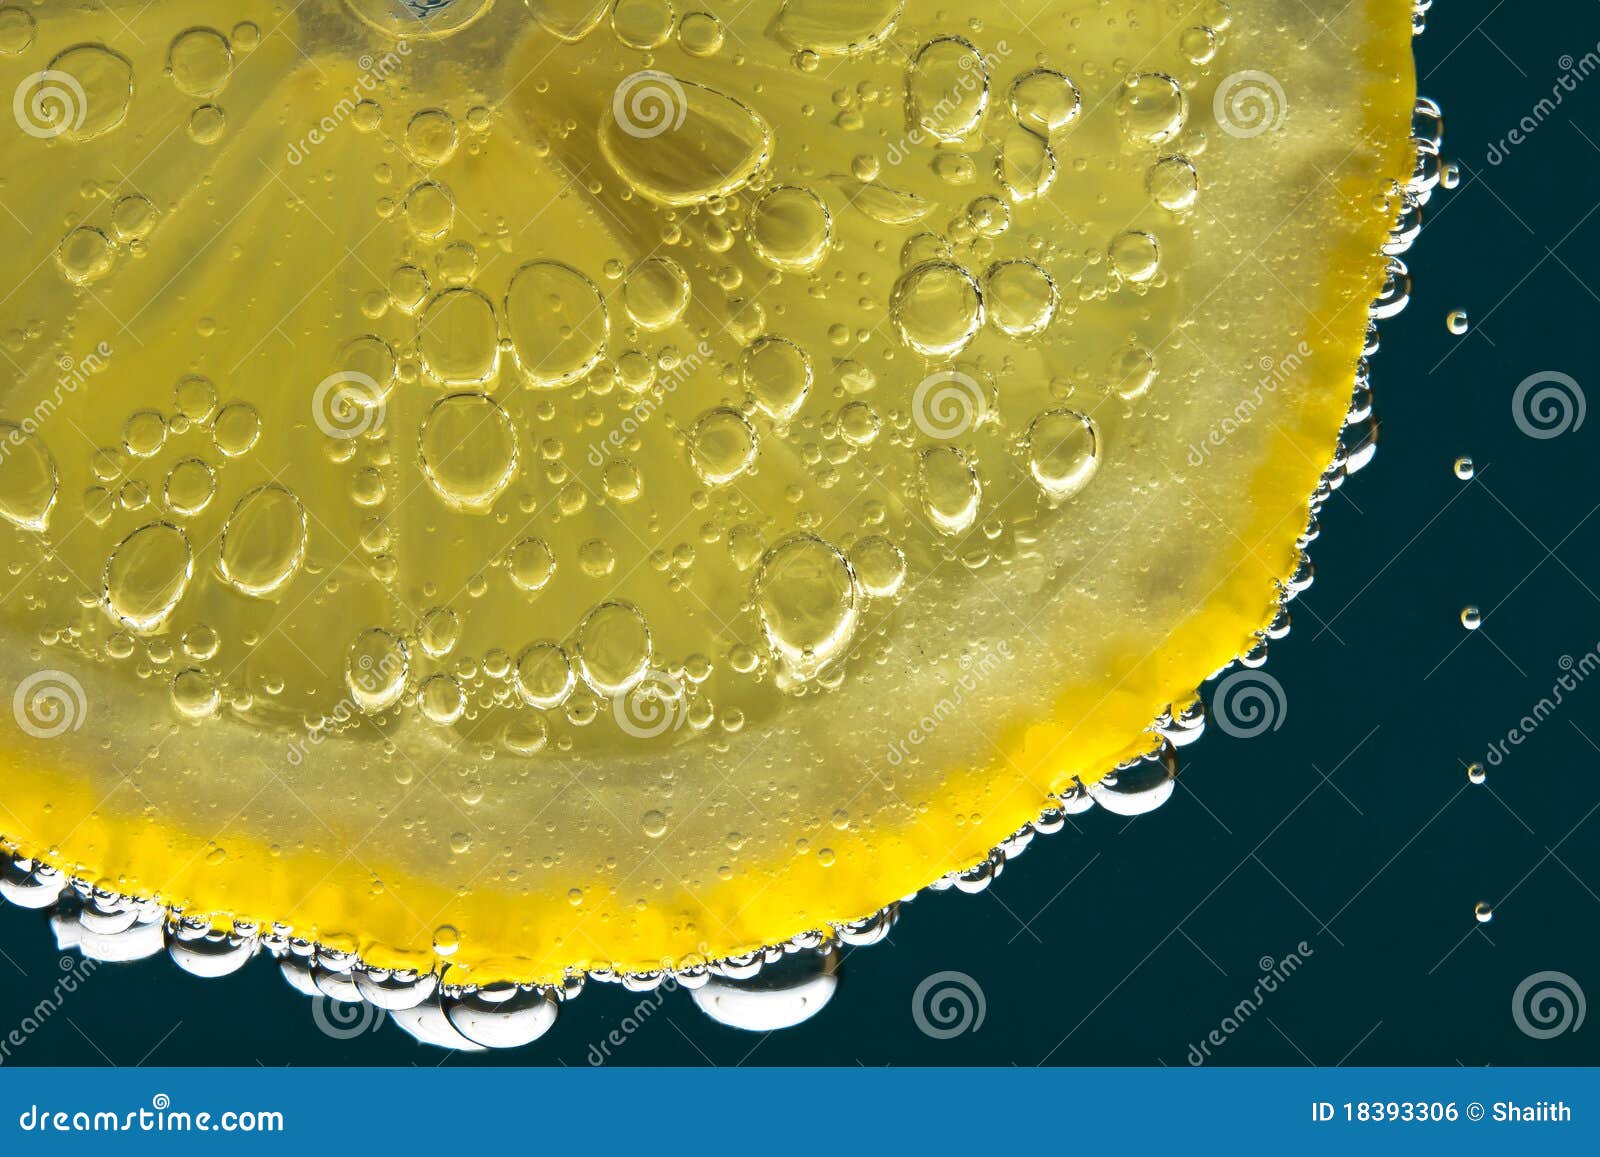 Дождики сольются в крупные. Лимон срез. Газировка с лимоном. Лимон в газированной воде. Срез лимона фото.